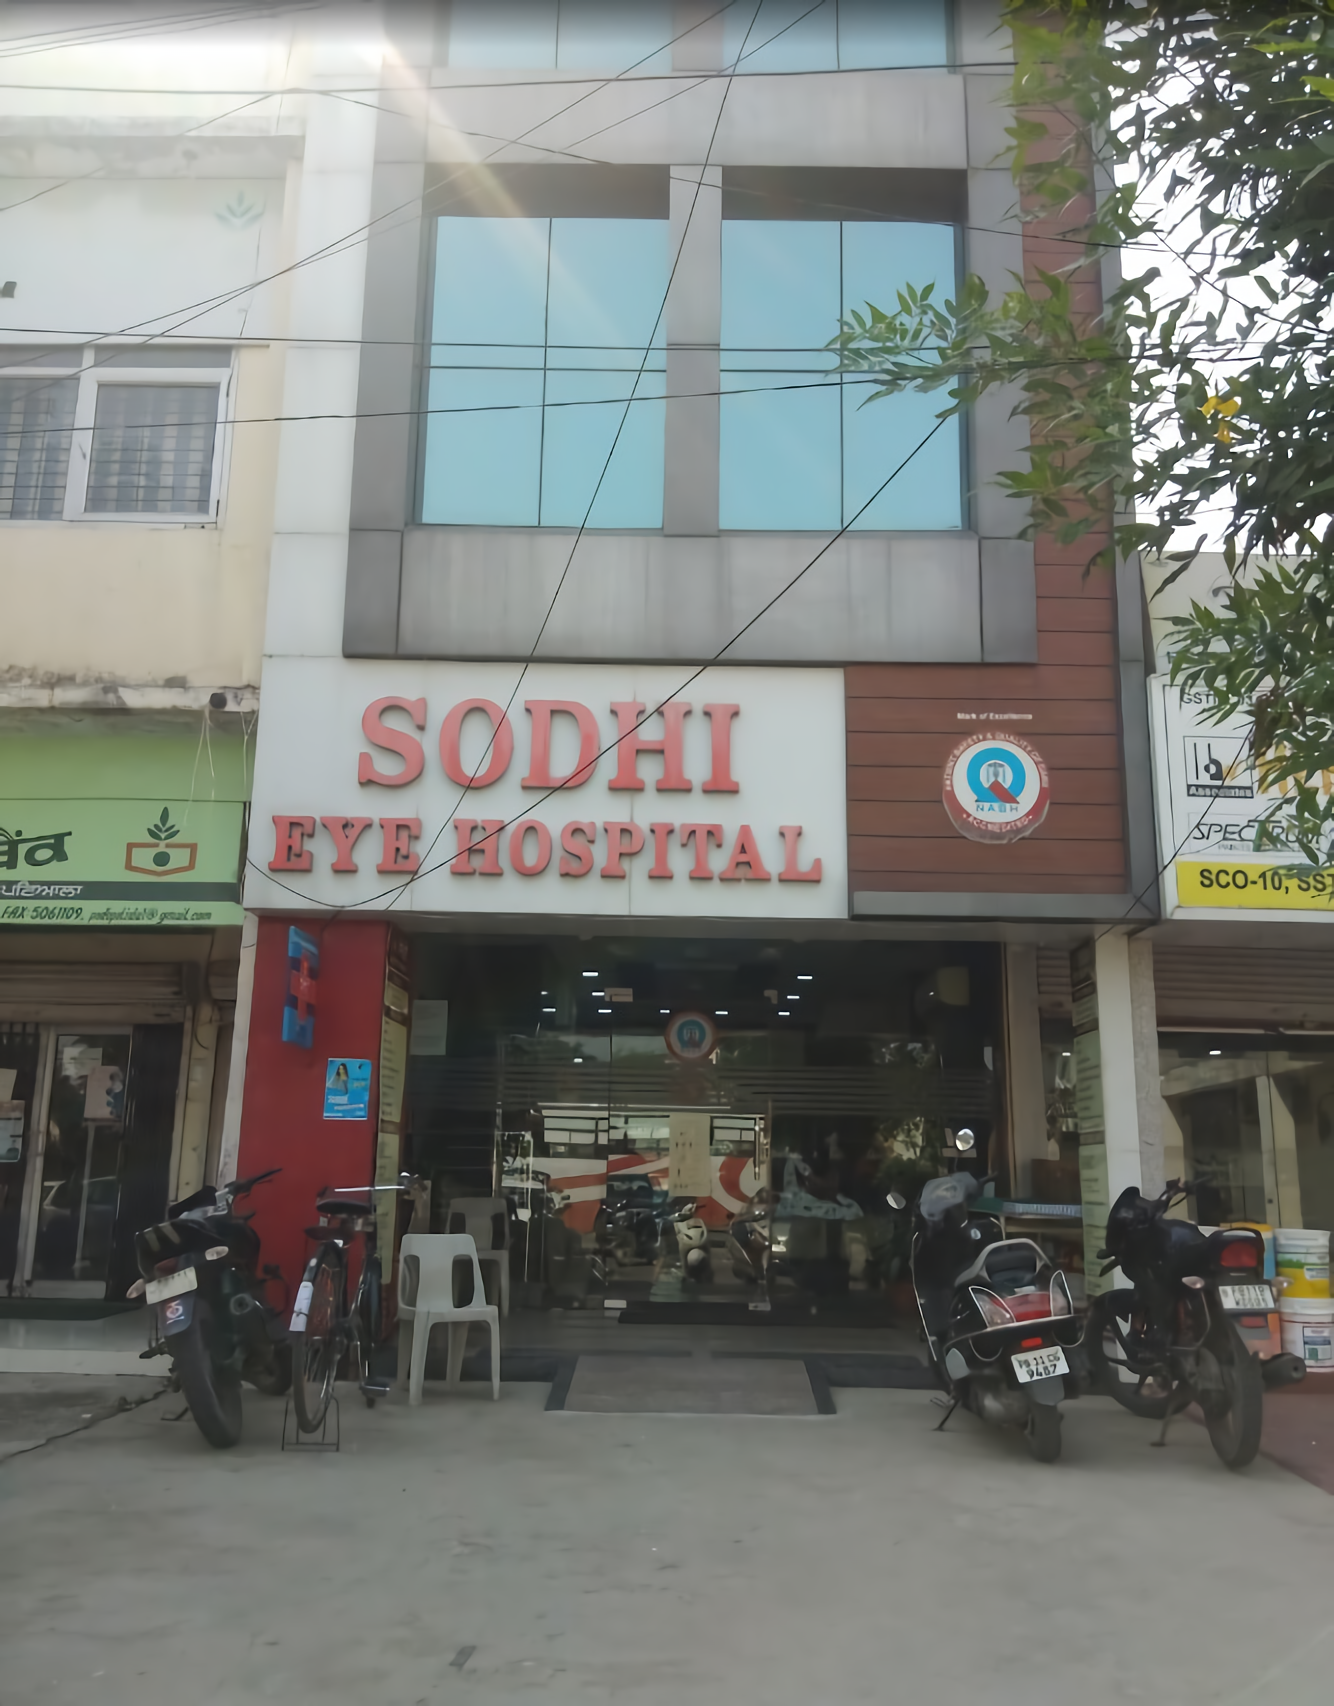 Sodhi Eye Hospital